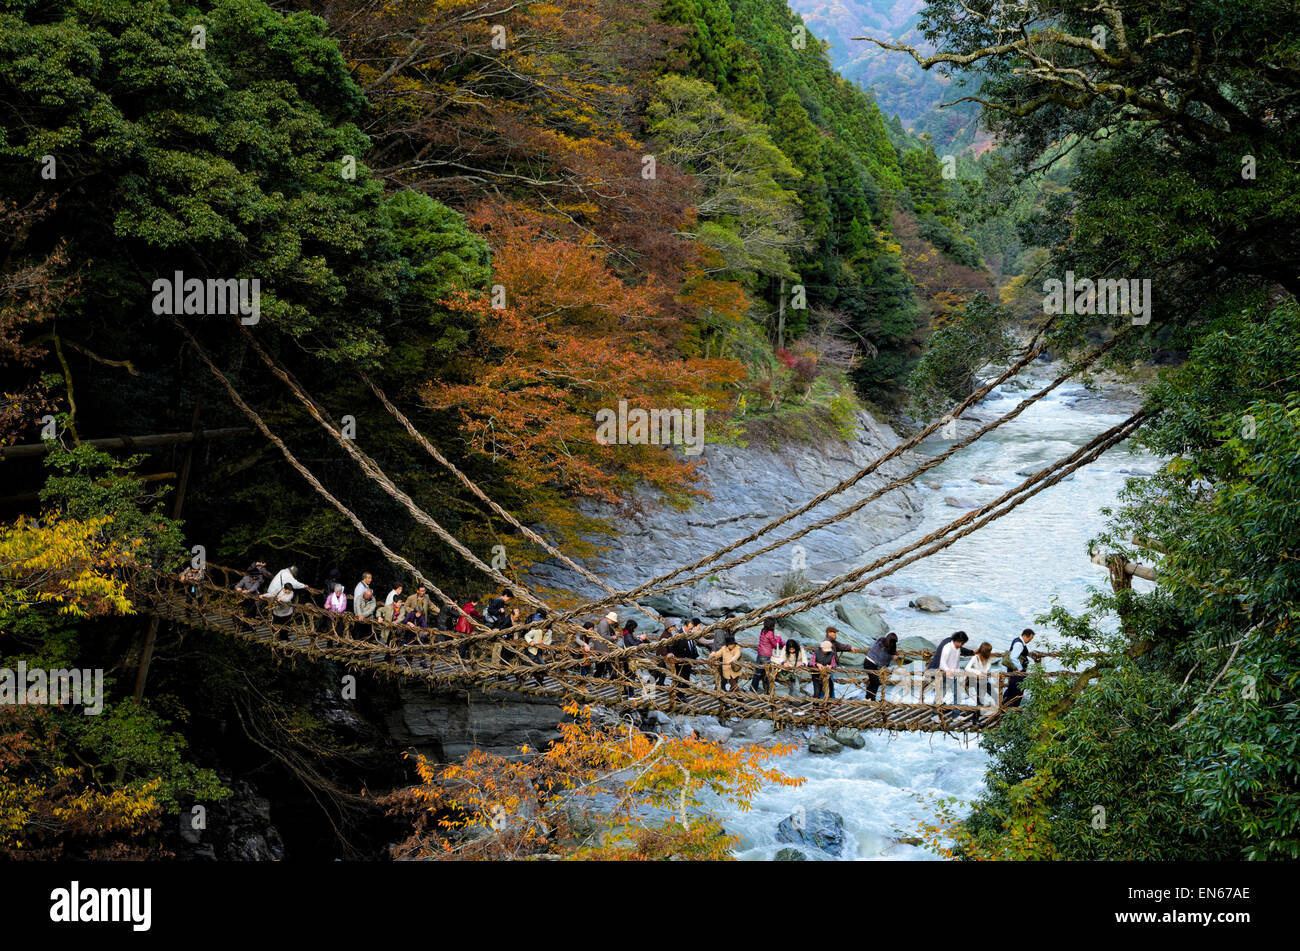 Les Japonais la traversée du célèbre pont de la vigne à Kazurabashi, vallée de l'Iya, Tokushima, Shikoku, au Japon. Vieux pont suspendu ; rivière ; couleurs d'automne Banque D'Images